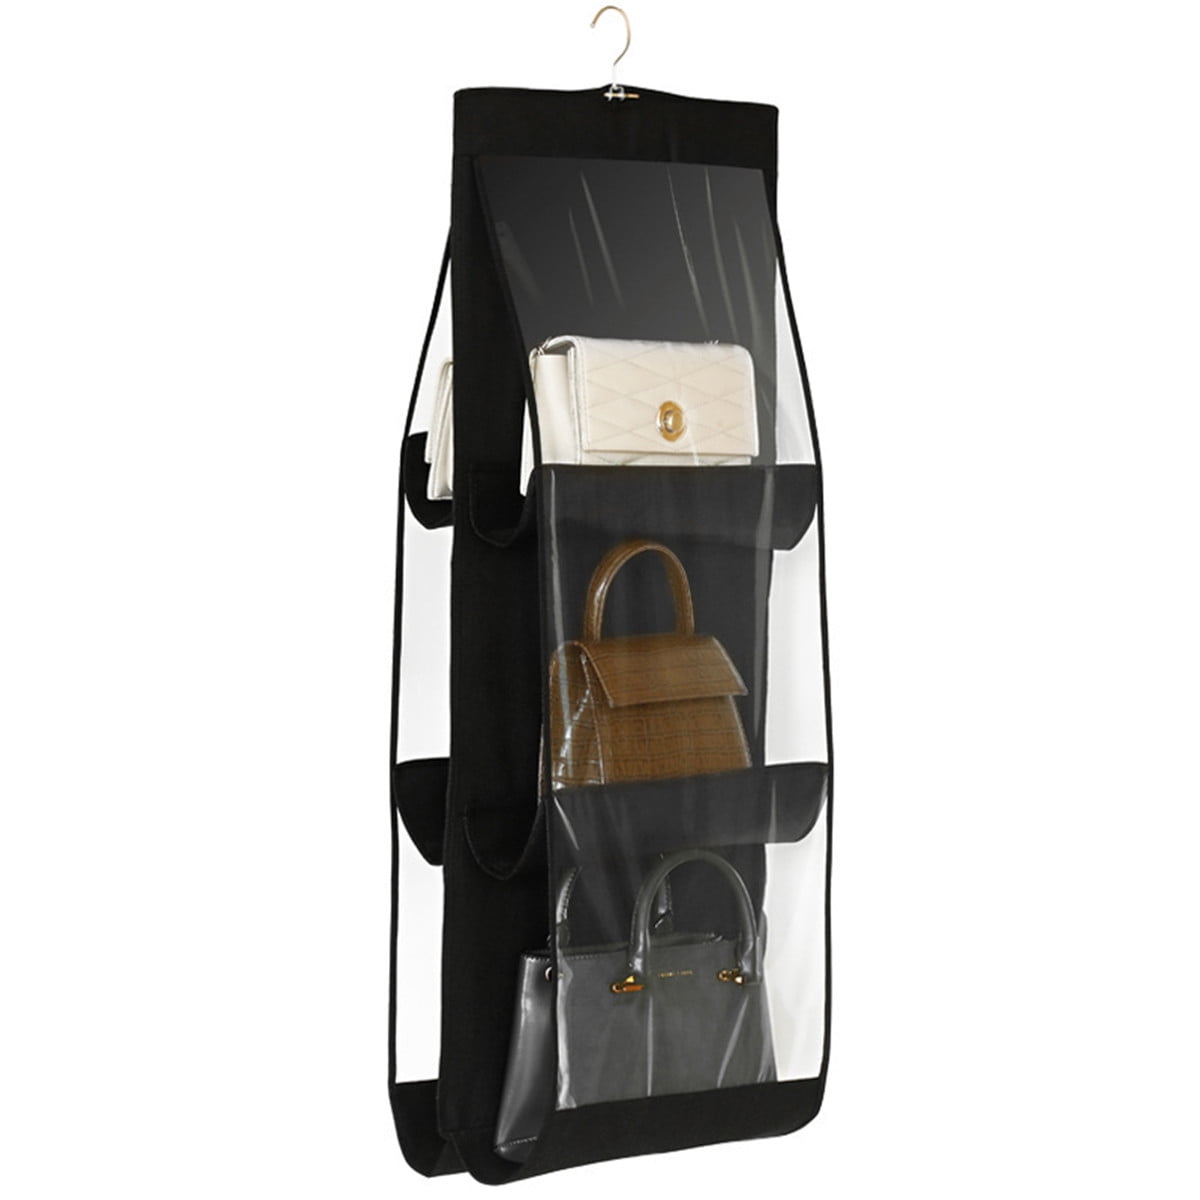 6 Pockets Folding Hanging Handbag Storage Holder Organizer Rack Hook Hanger Bag 